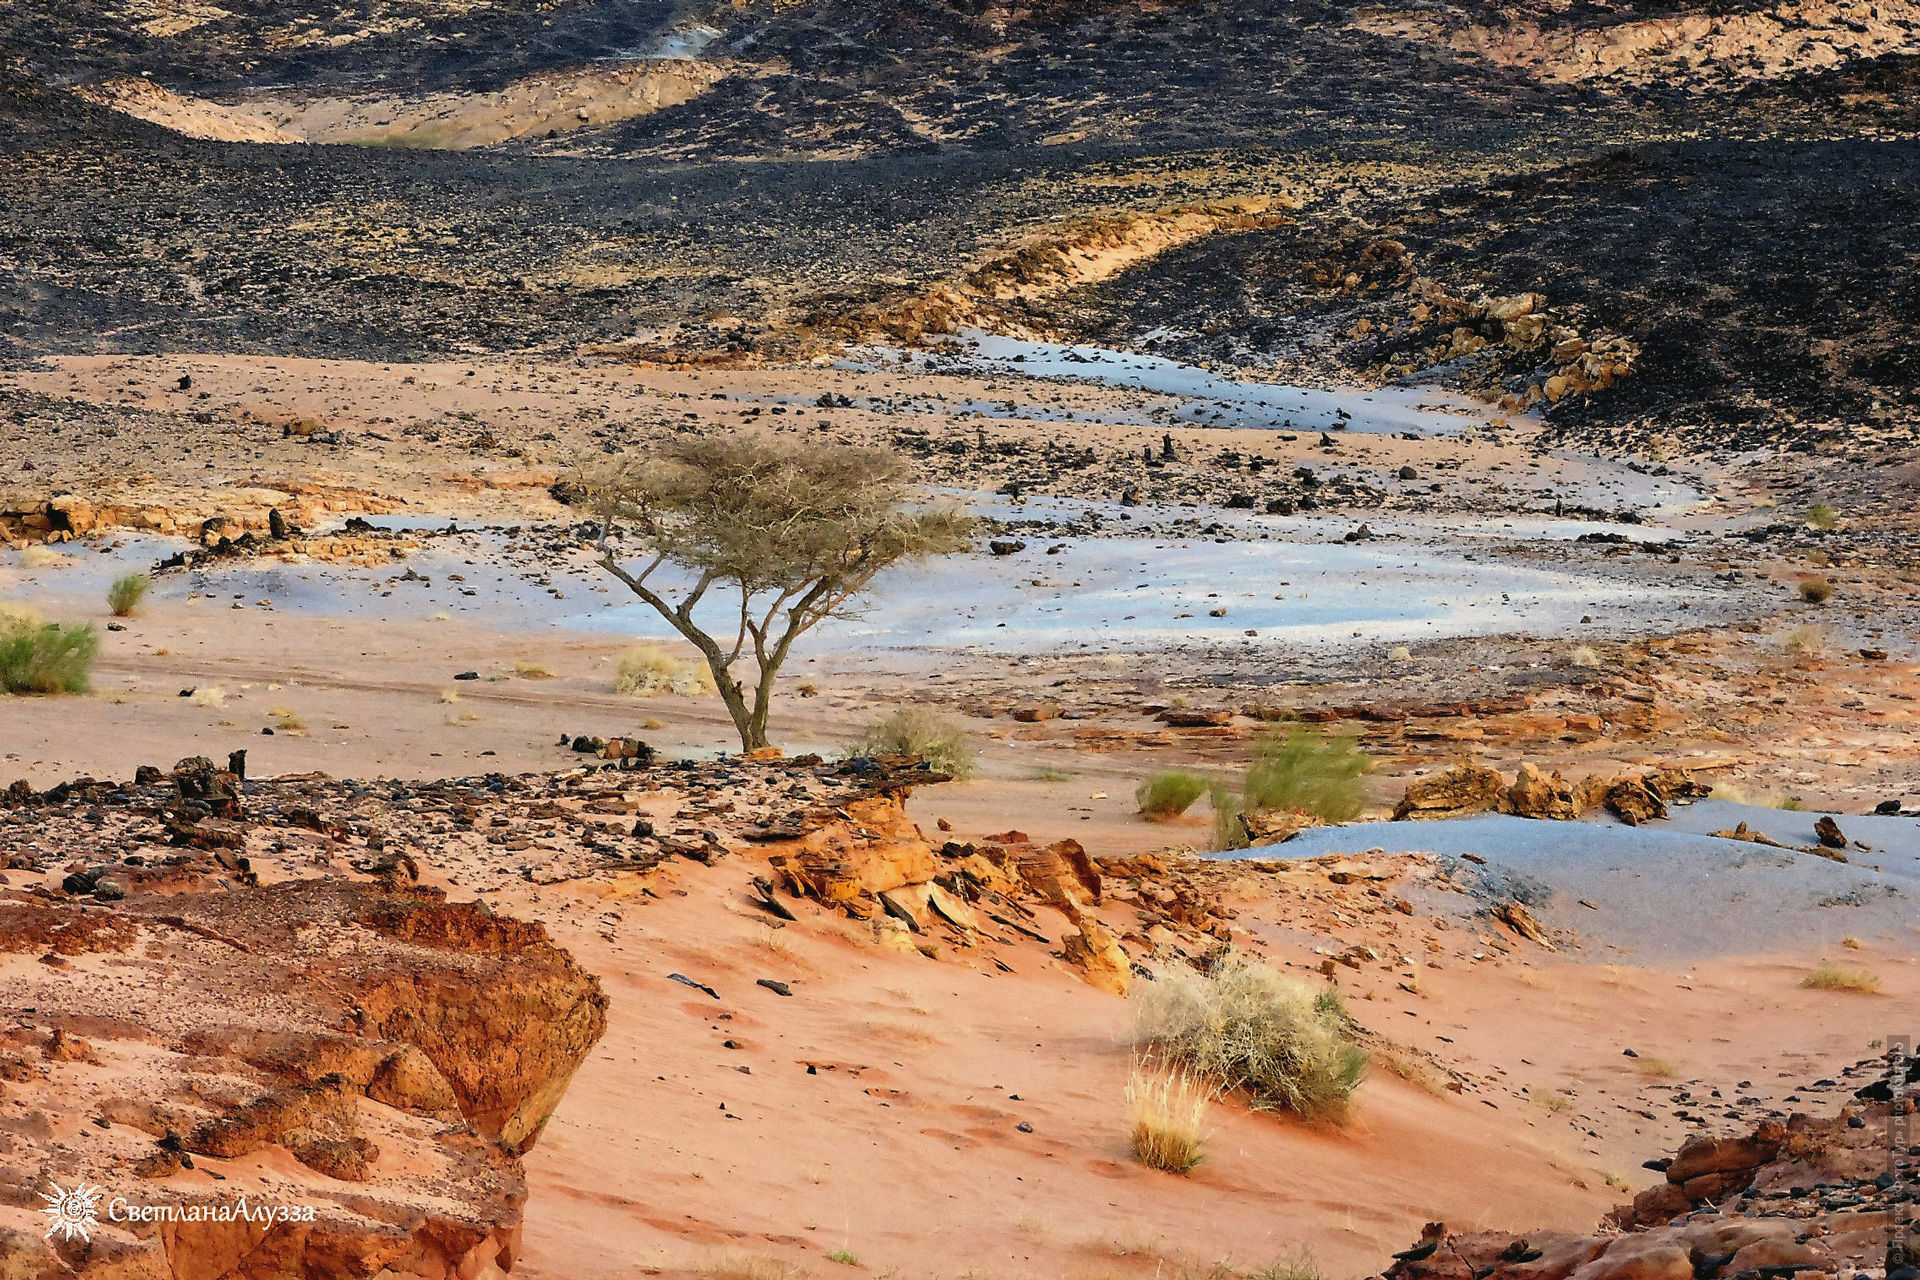 Эль Фуга, приключенческий фототур/тур пустыни и горы Синая, Египет, 27 ноября - 8 декабря 2021 года.